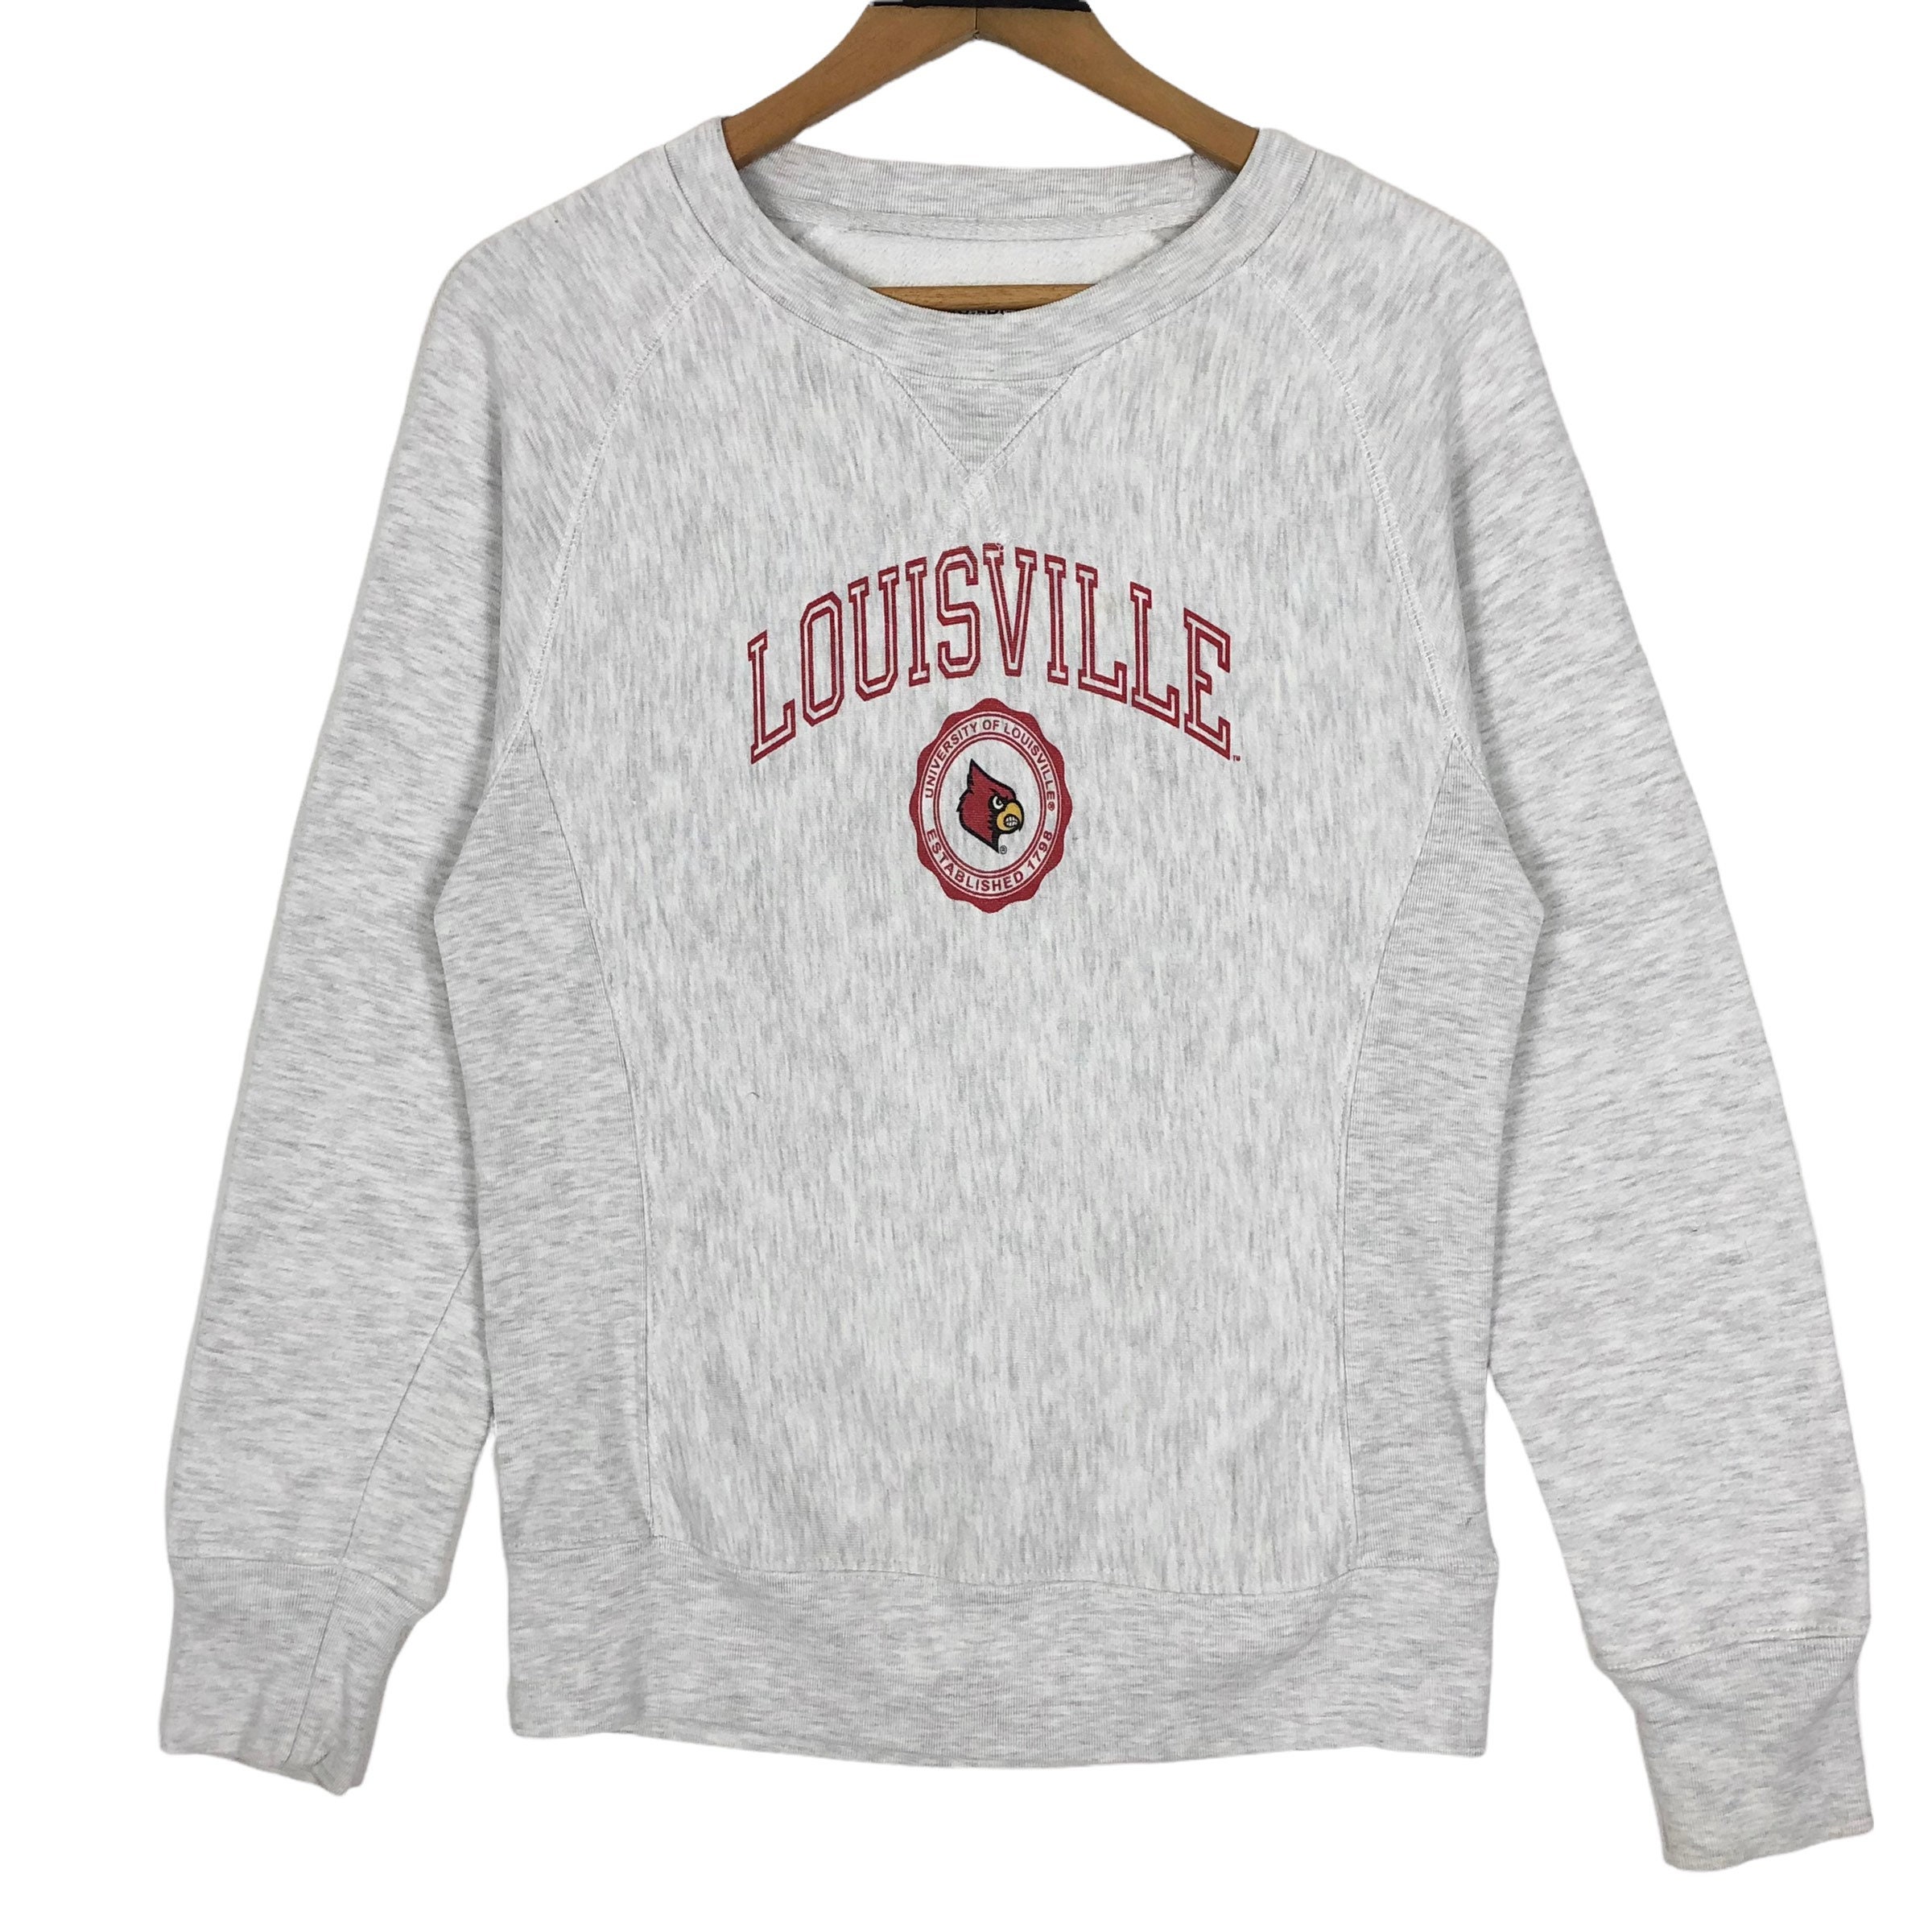 Buy University of Louisville Cardinals Crewneck Sweatshirt Online